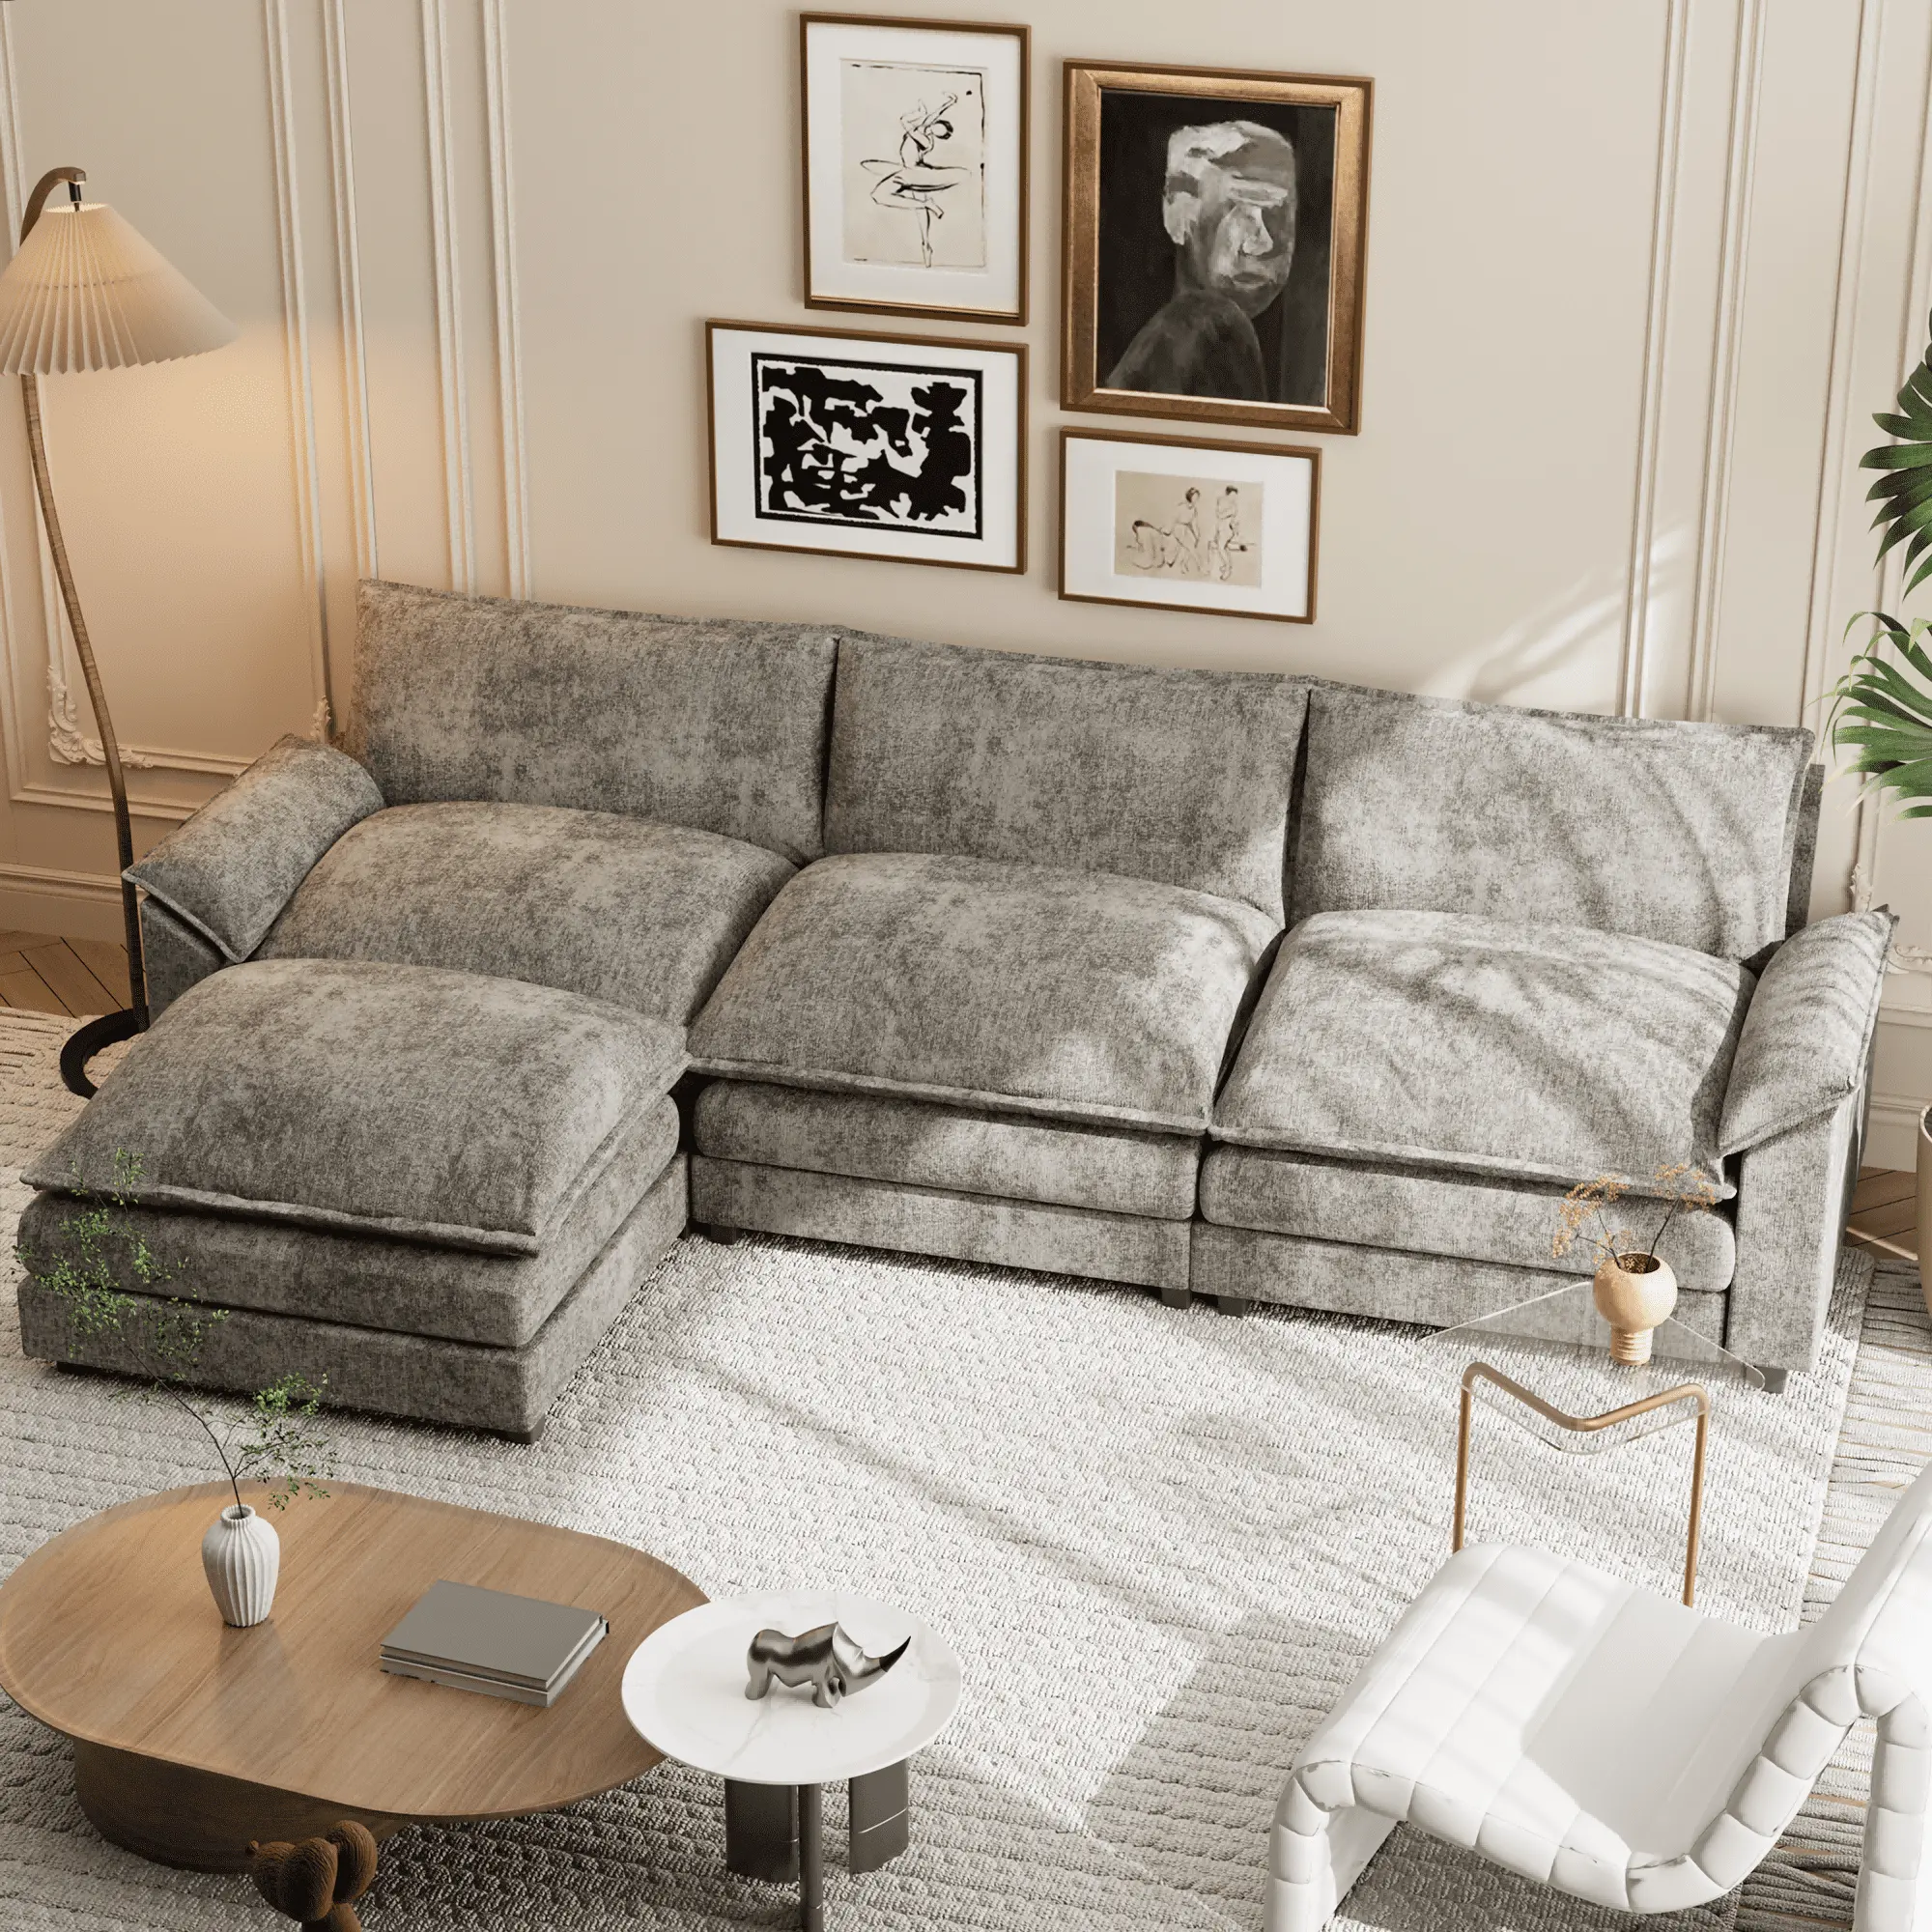 ATUNUS Modernes Modulhaus grau sektional U-Form Sofa Wohnen hochwertiger amerikanischer Stil Zimmer Lounge Möbel Luxusofa-Set